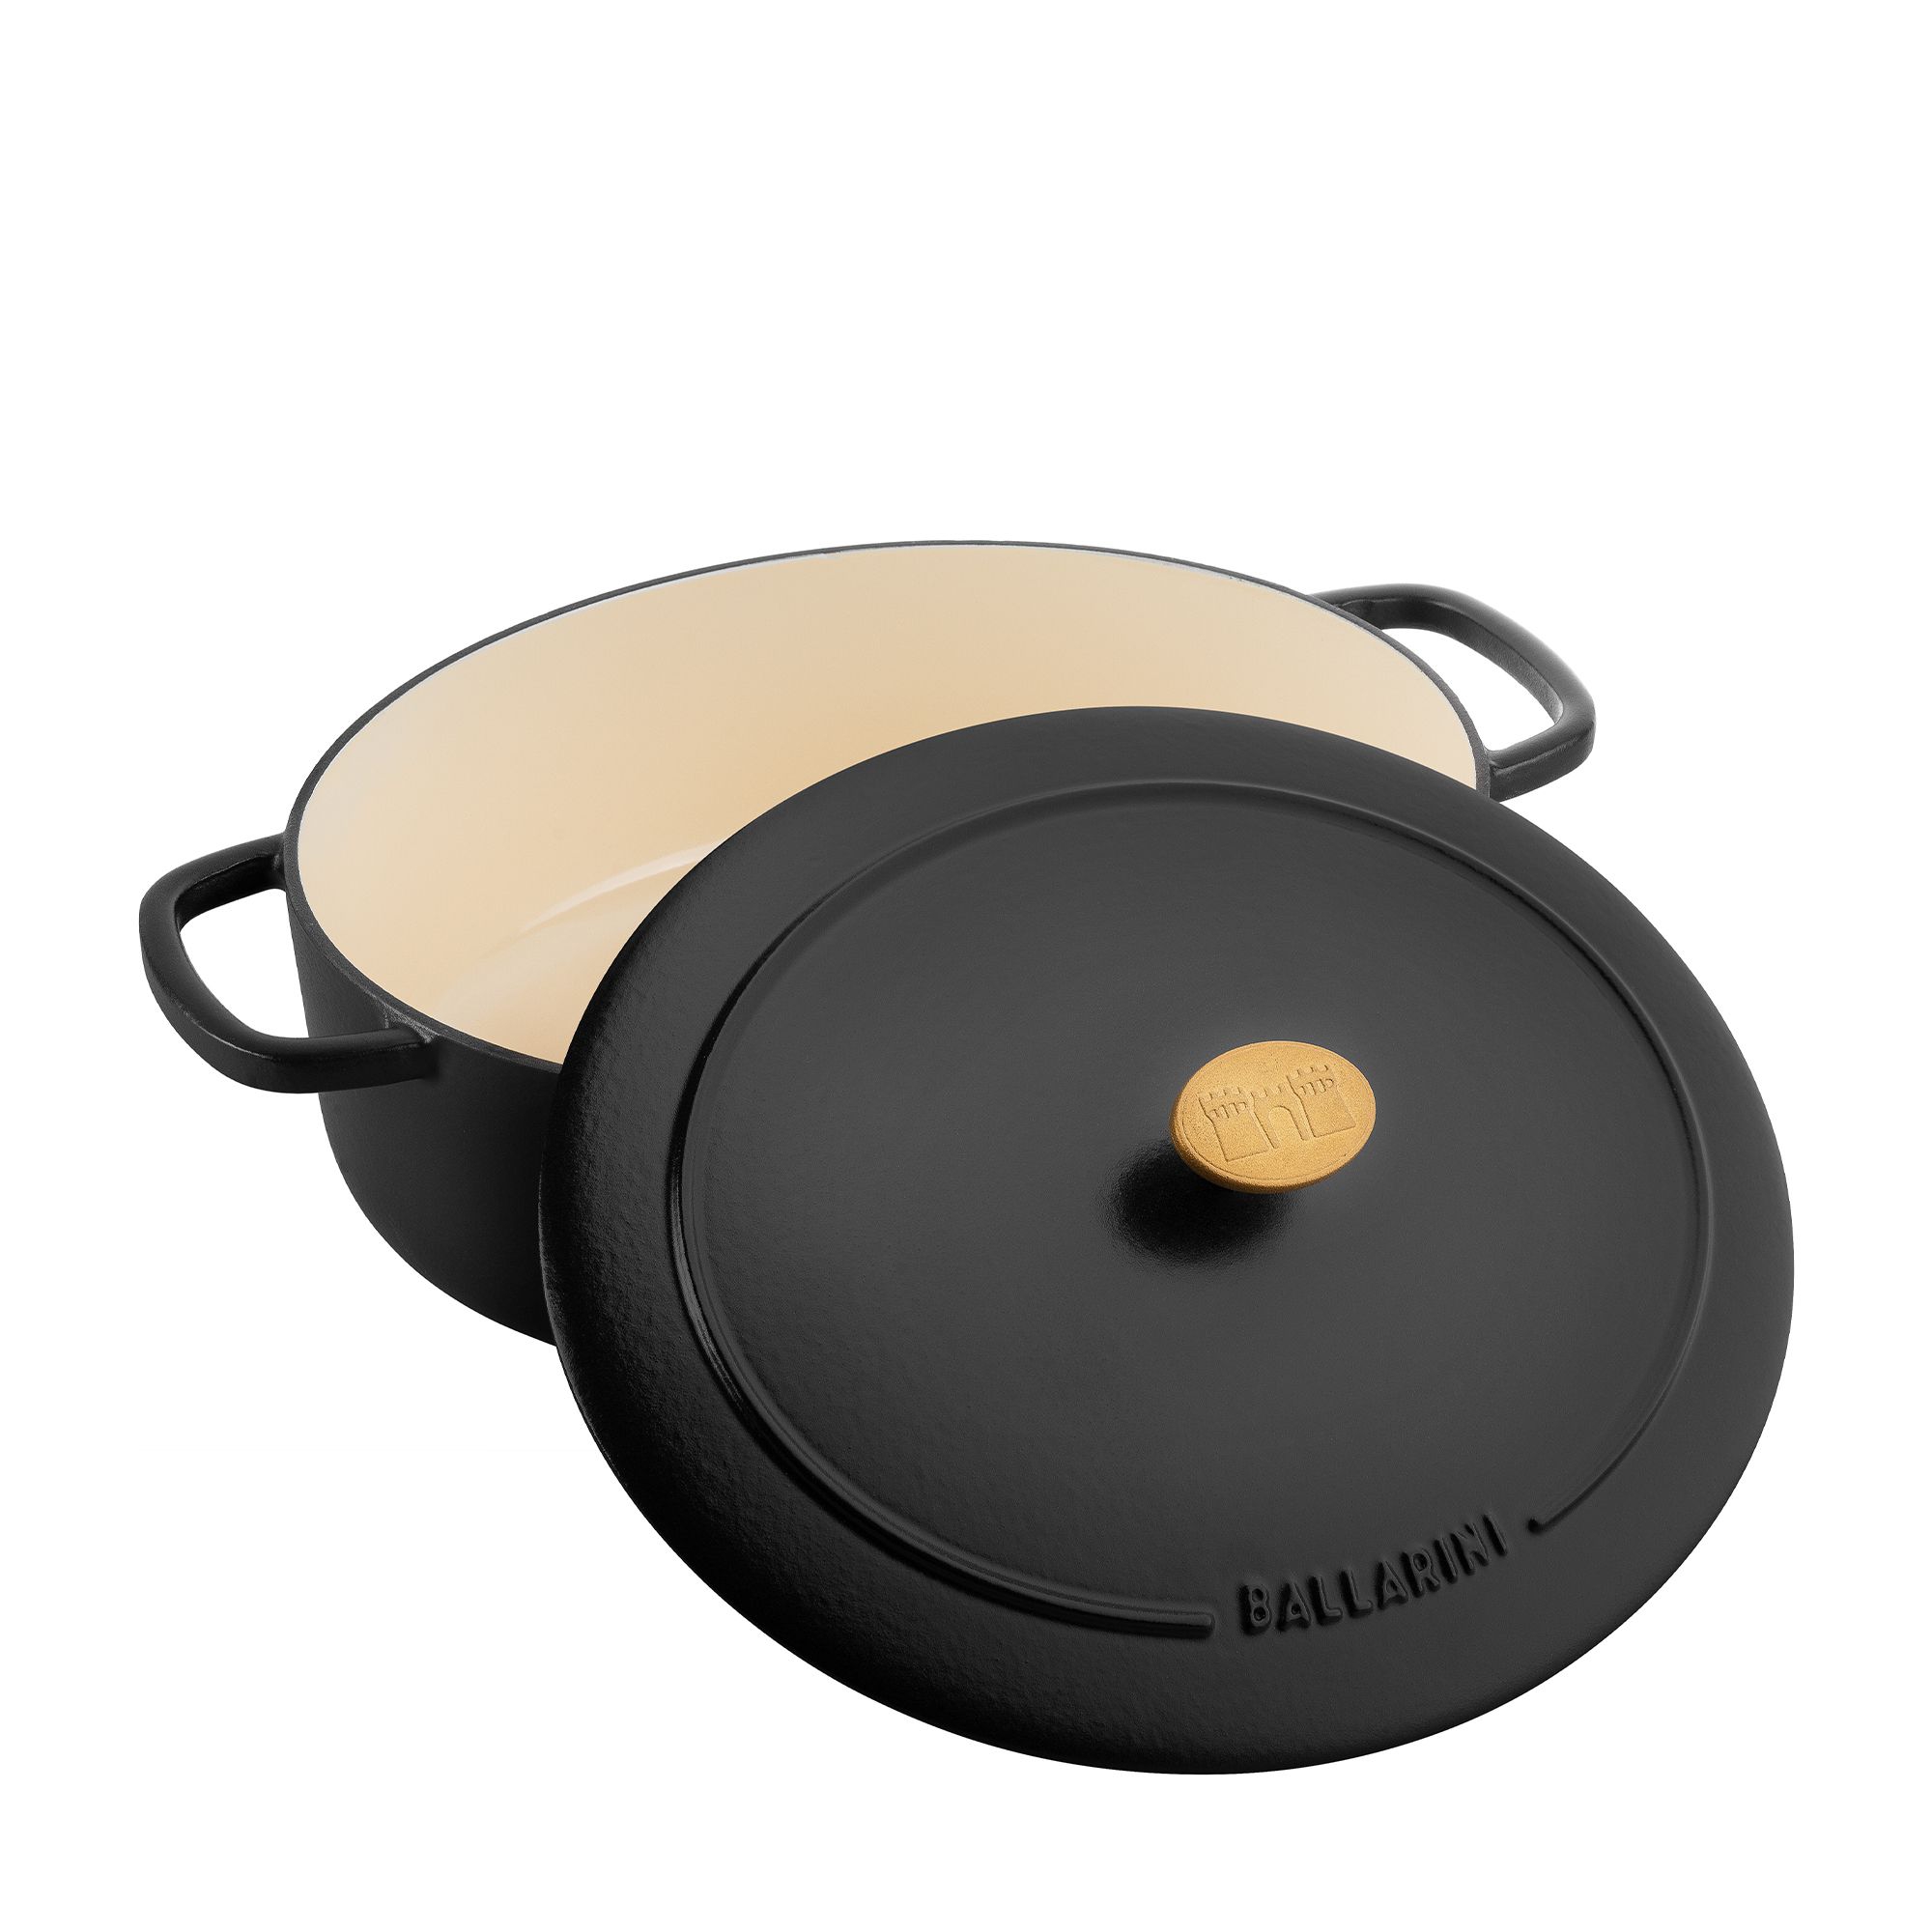  de Buyer Affinity Saucepan with Lid Diameter 16 cm, 20 cm: Home  & Kitchen